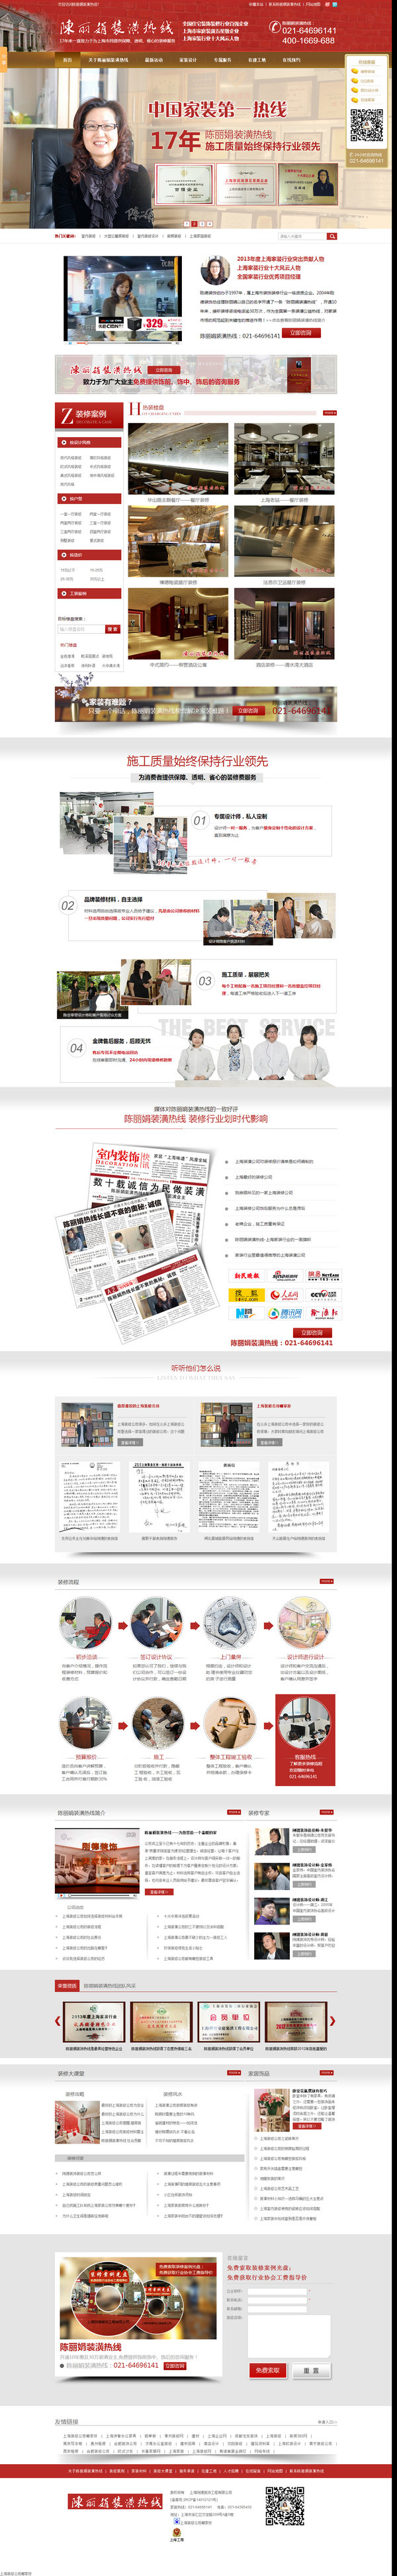 上海刚德装饰公司营销型网站